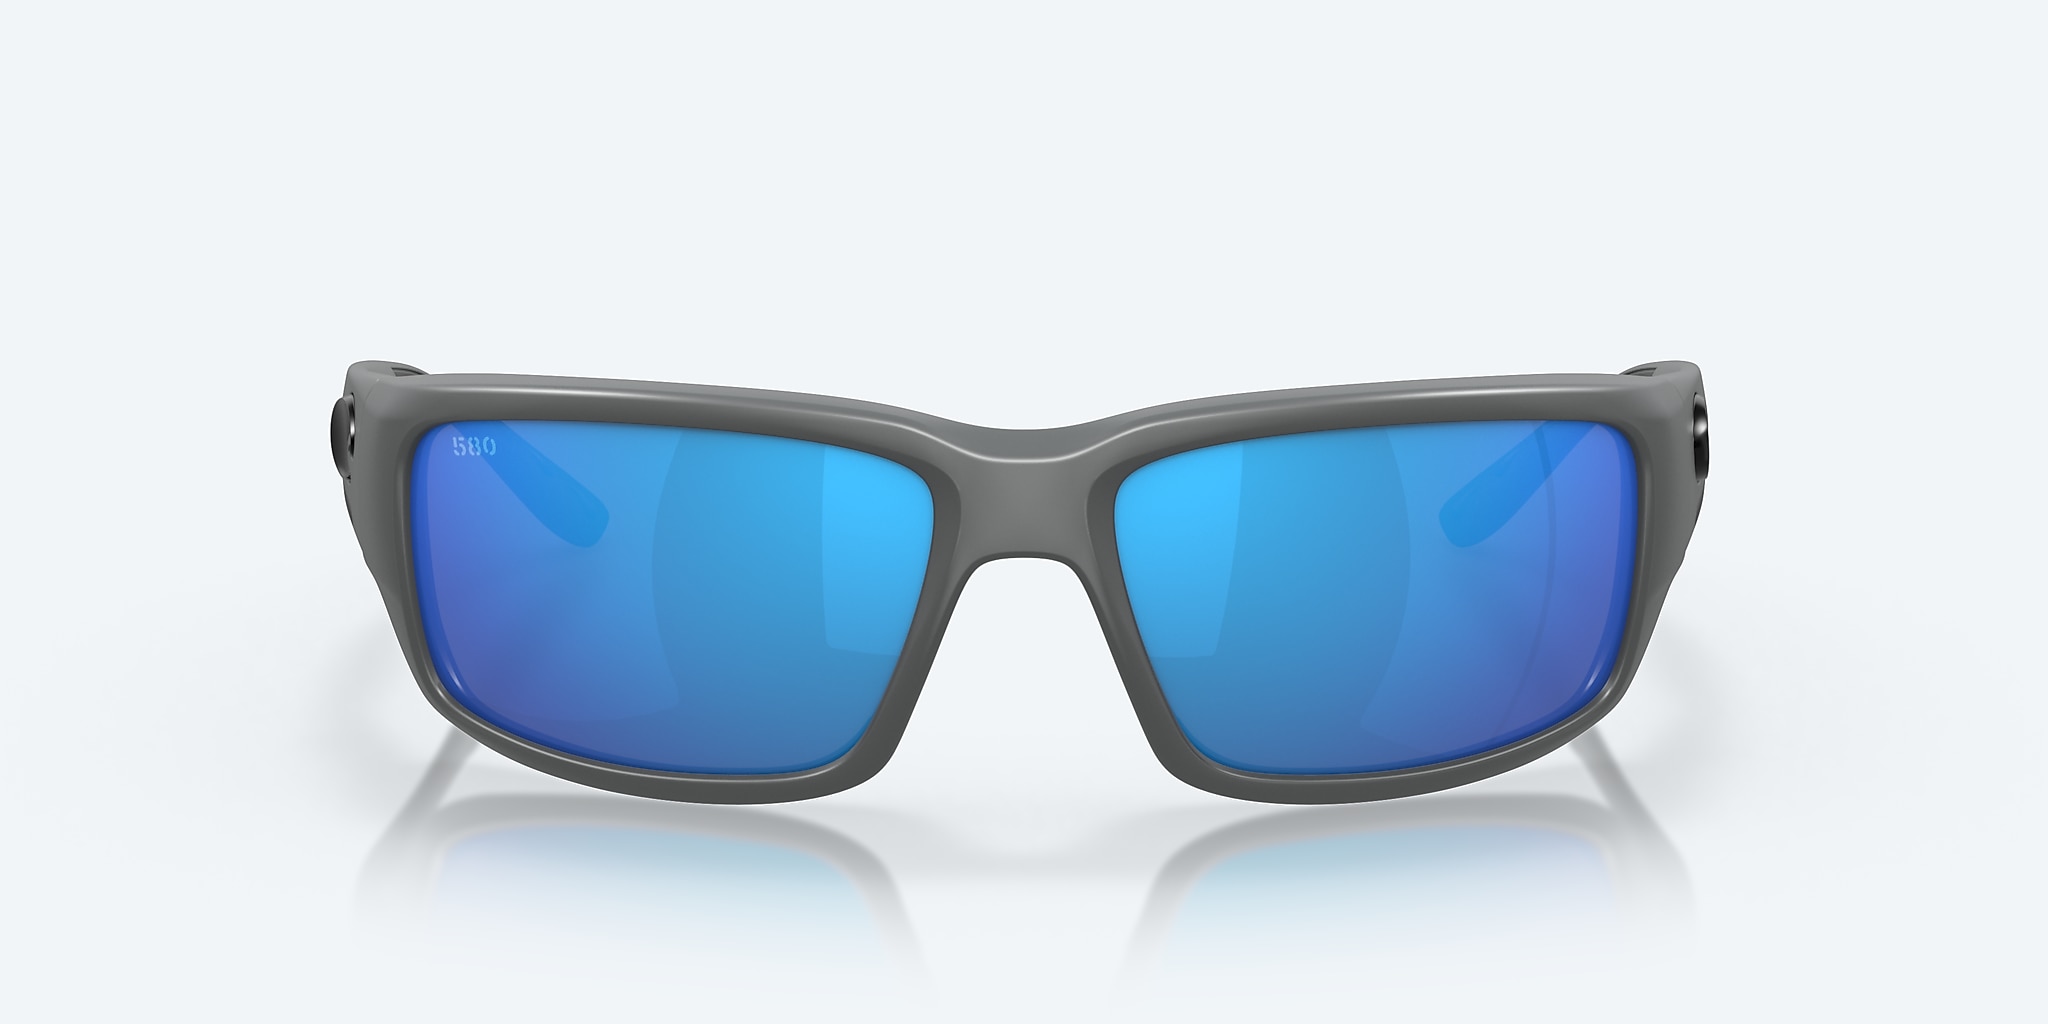 Fantail Polarized Sunglasses Del Mar® Blue in Costa Mirror 